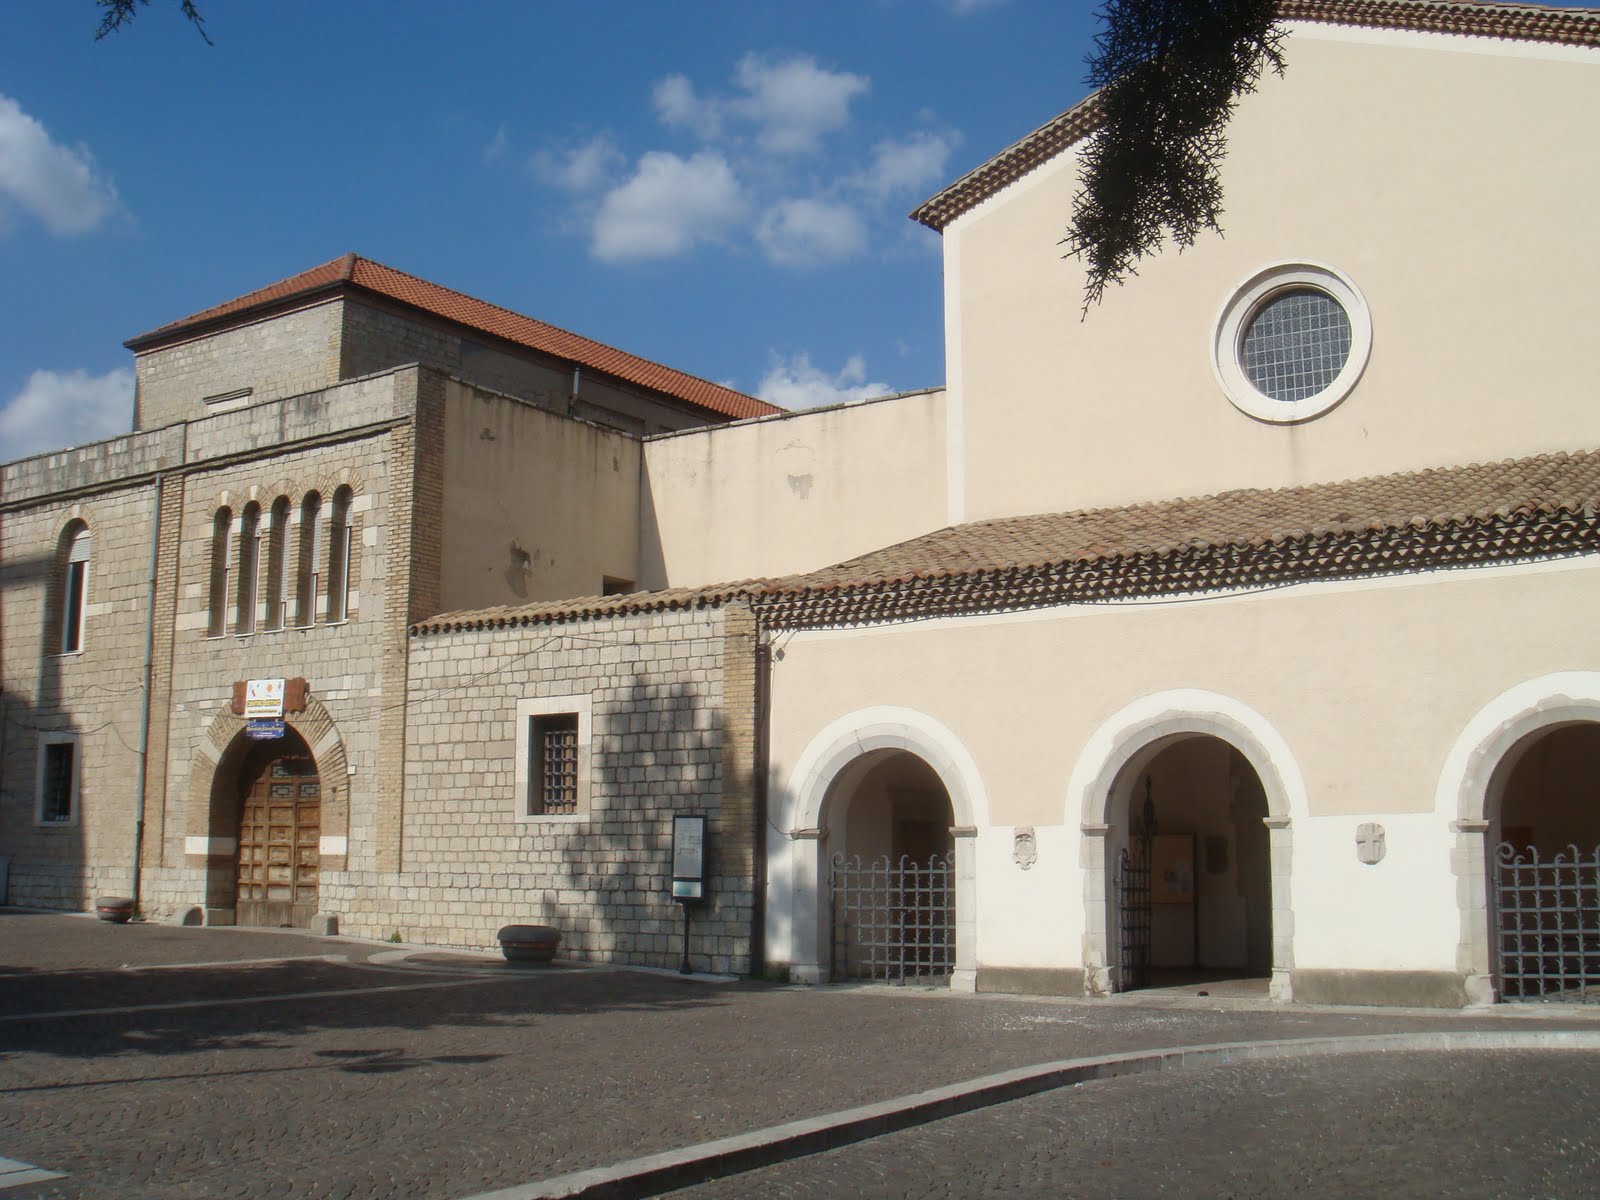 Church of Santa Maria del Sepolcro